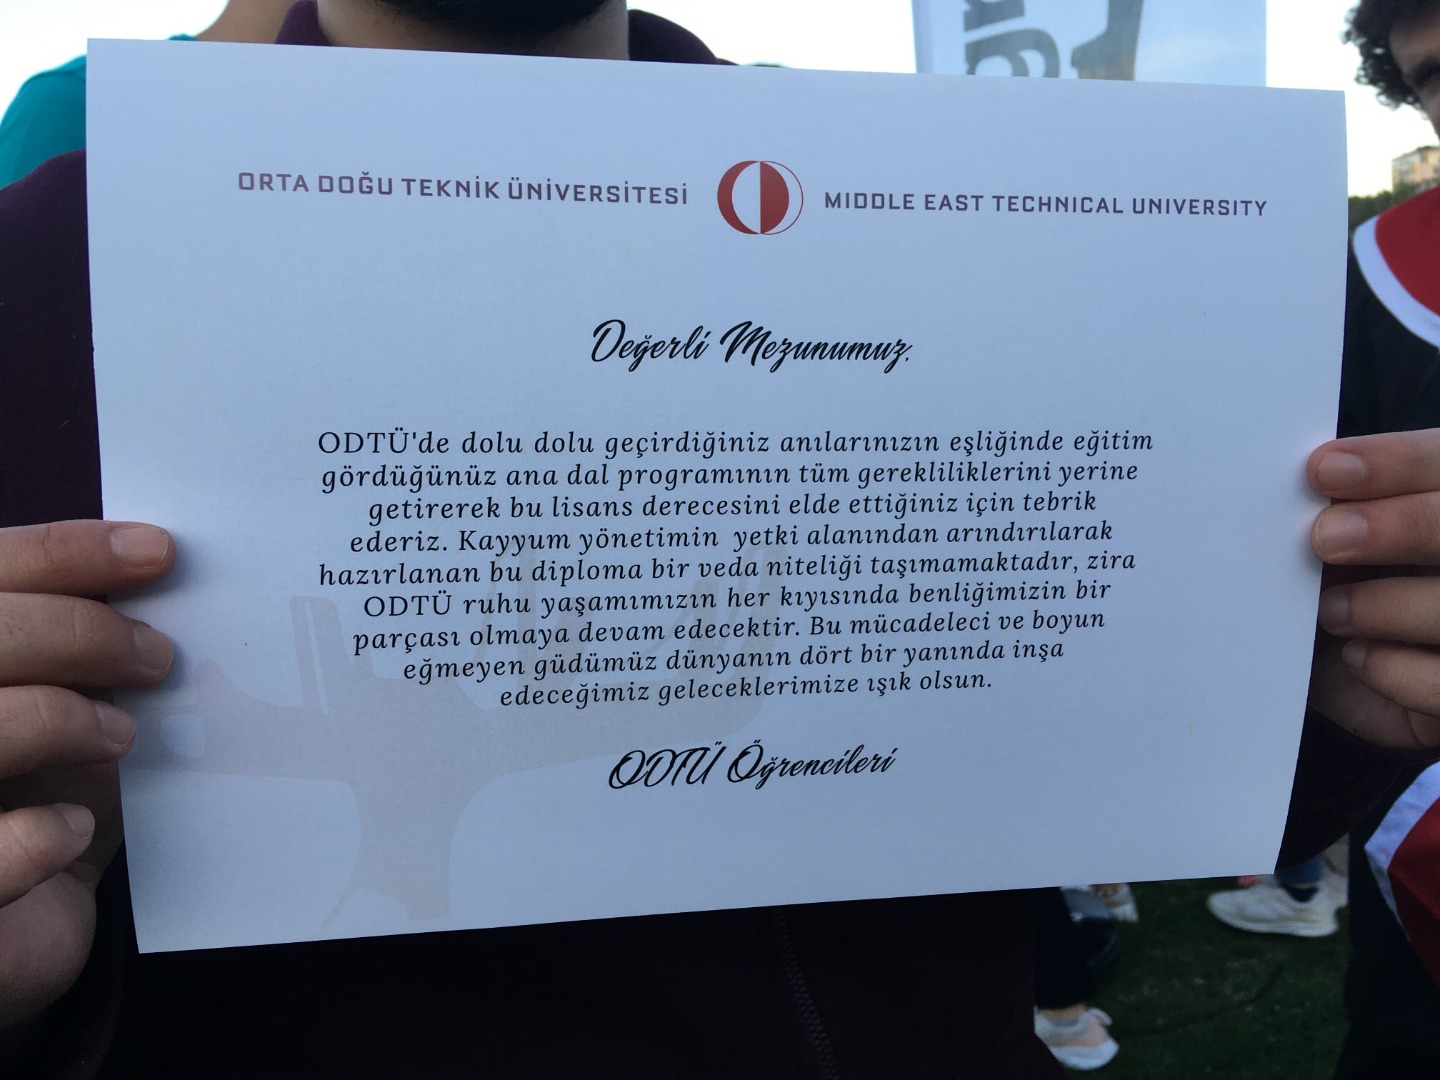 ODTÜ'lü öğrencileri mezuniyet töreninde birbirinden mizahi pankart taşıdılar 13